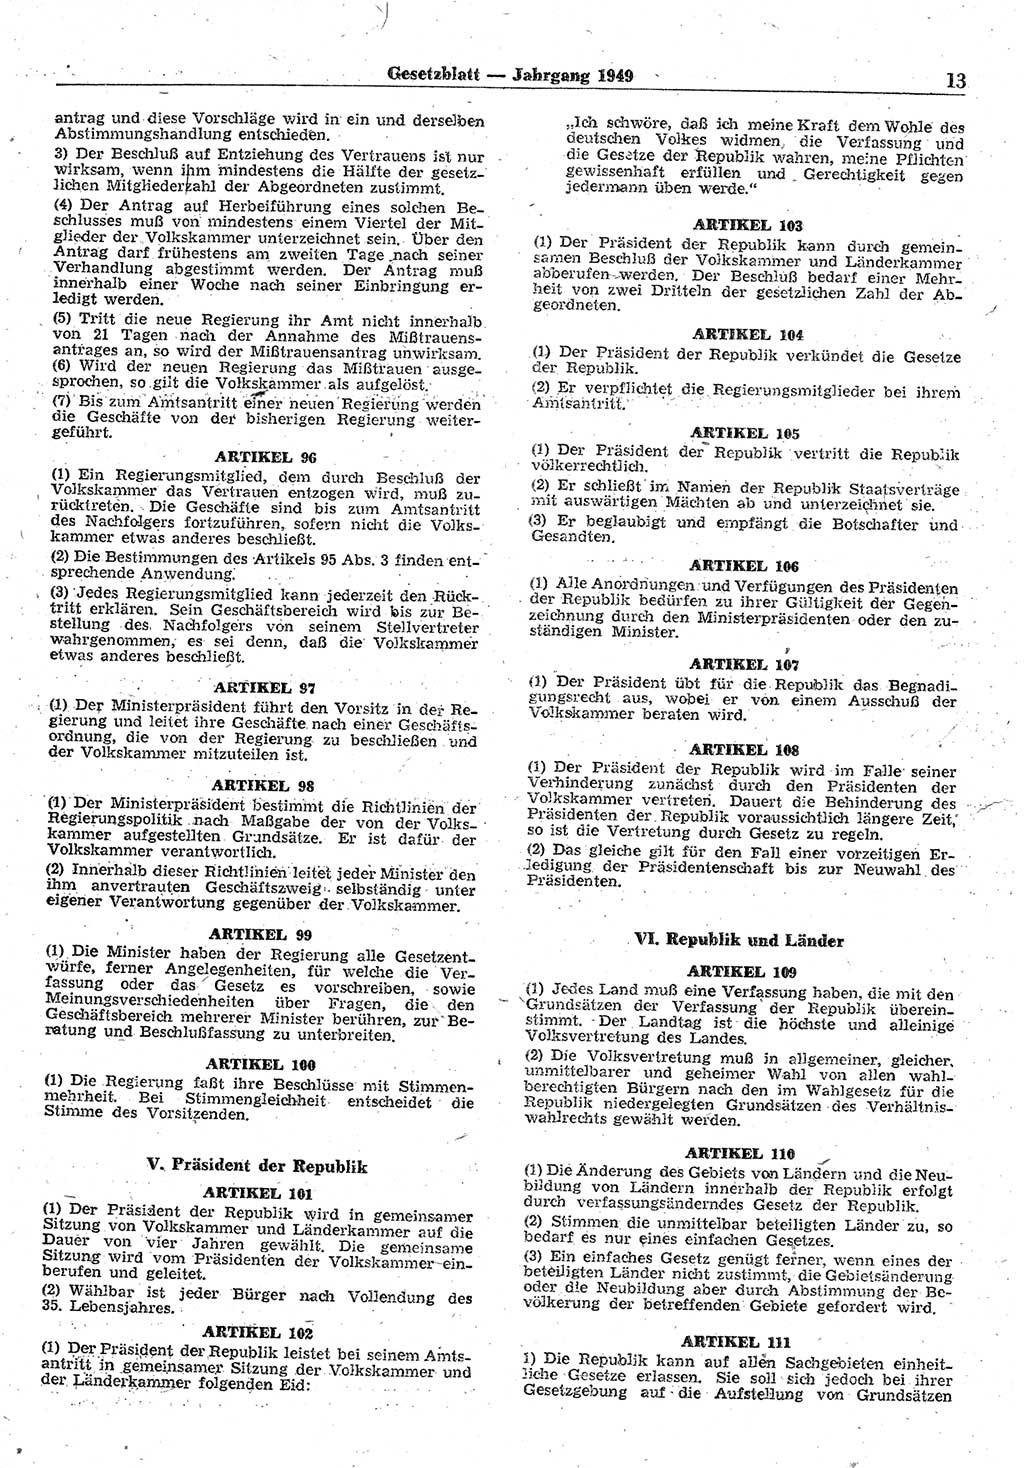 Gesetzblatt (GBl.) der Deutschen Demokratischen Republik (DDR) 1949, Seite 13 (GBl. DDR 1949, S. 13)